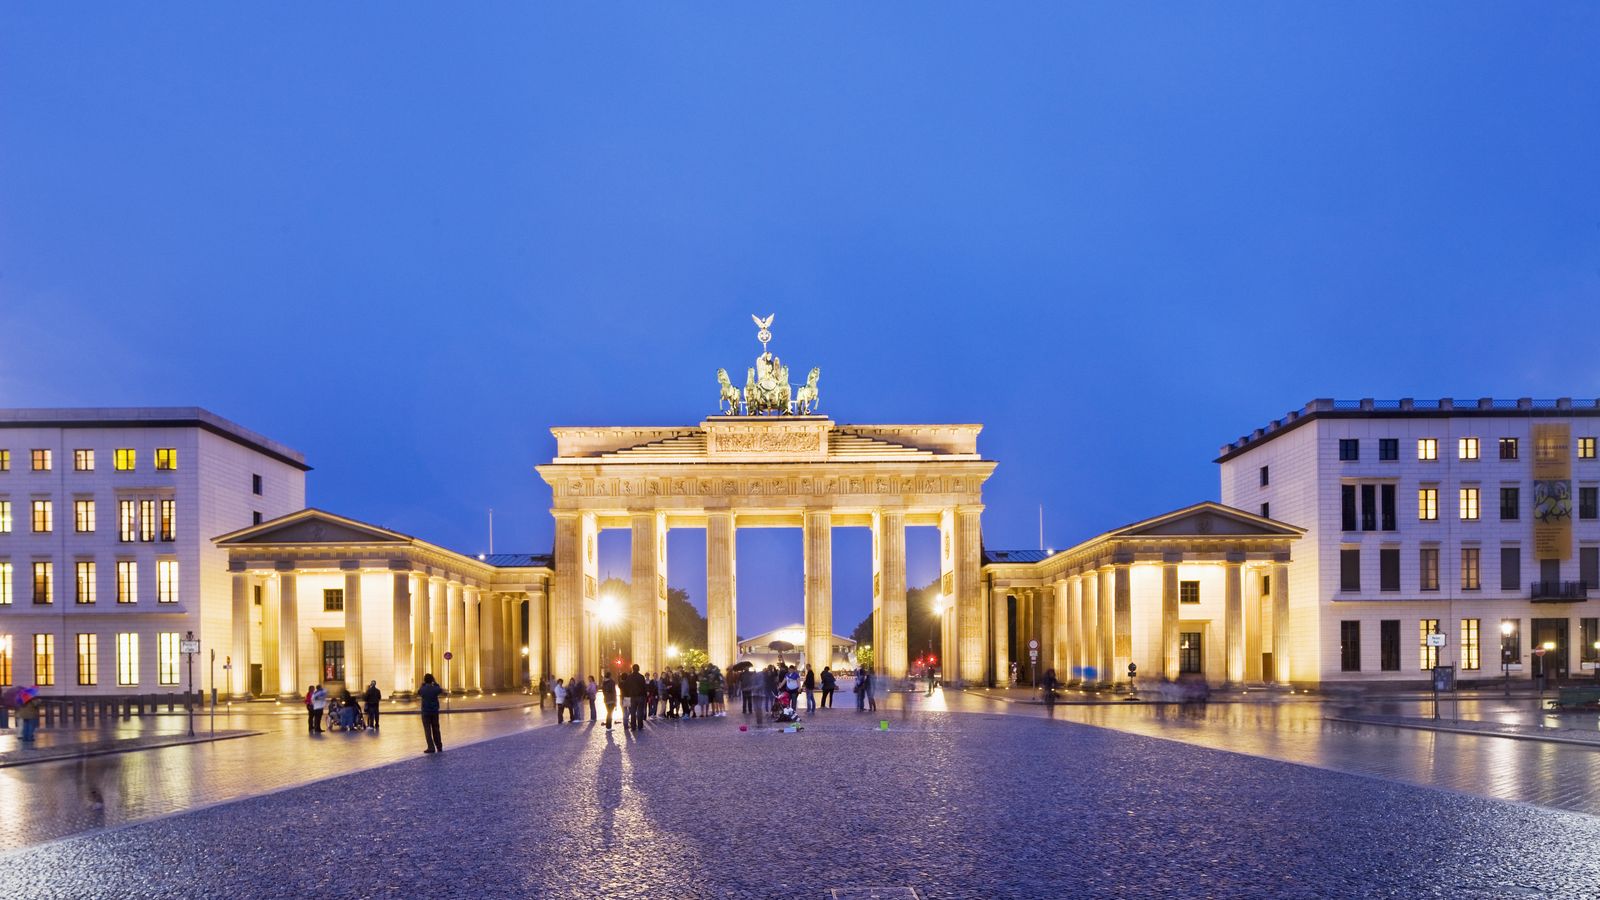 Foto: Berlín se ha convertido en la imagen del nuevo sueño alemán que cada vez atrae a más europeos. (Corbis)